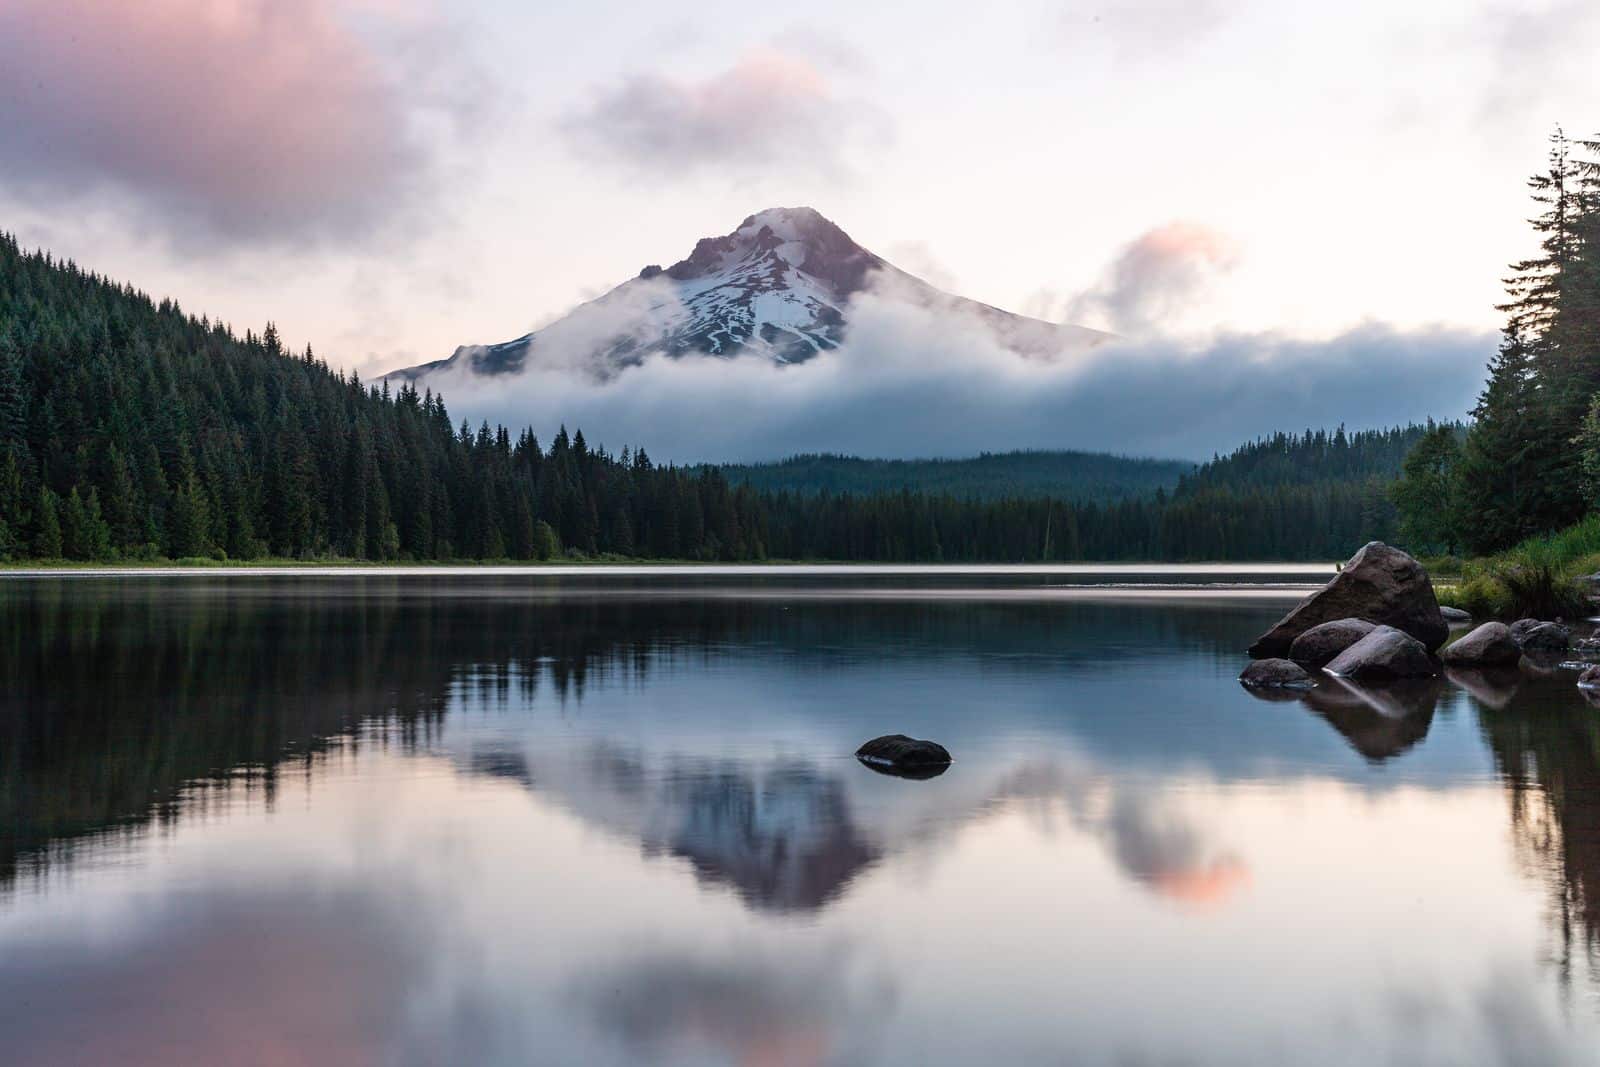 Lake and mountain scenery in Oregon